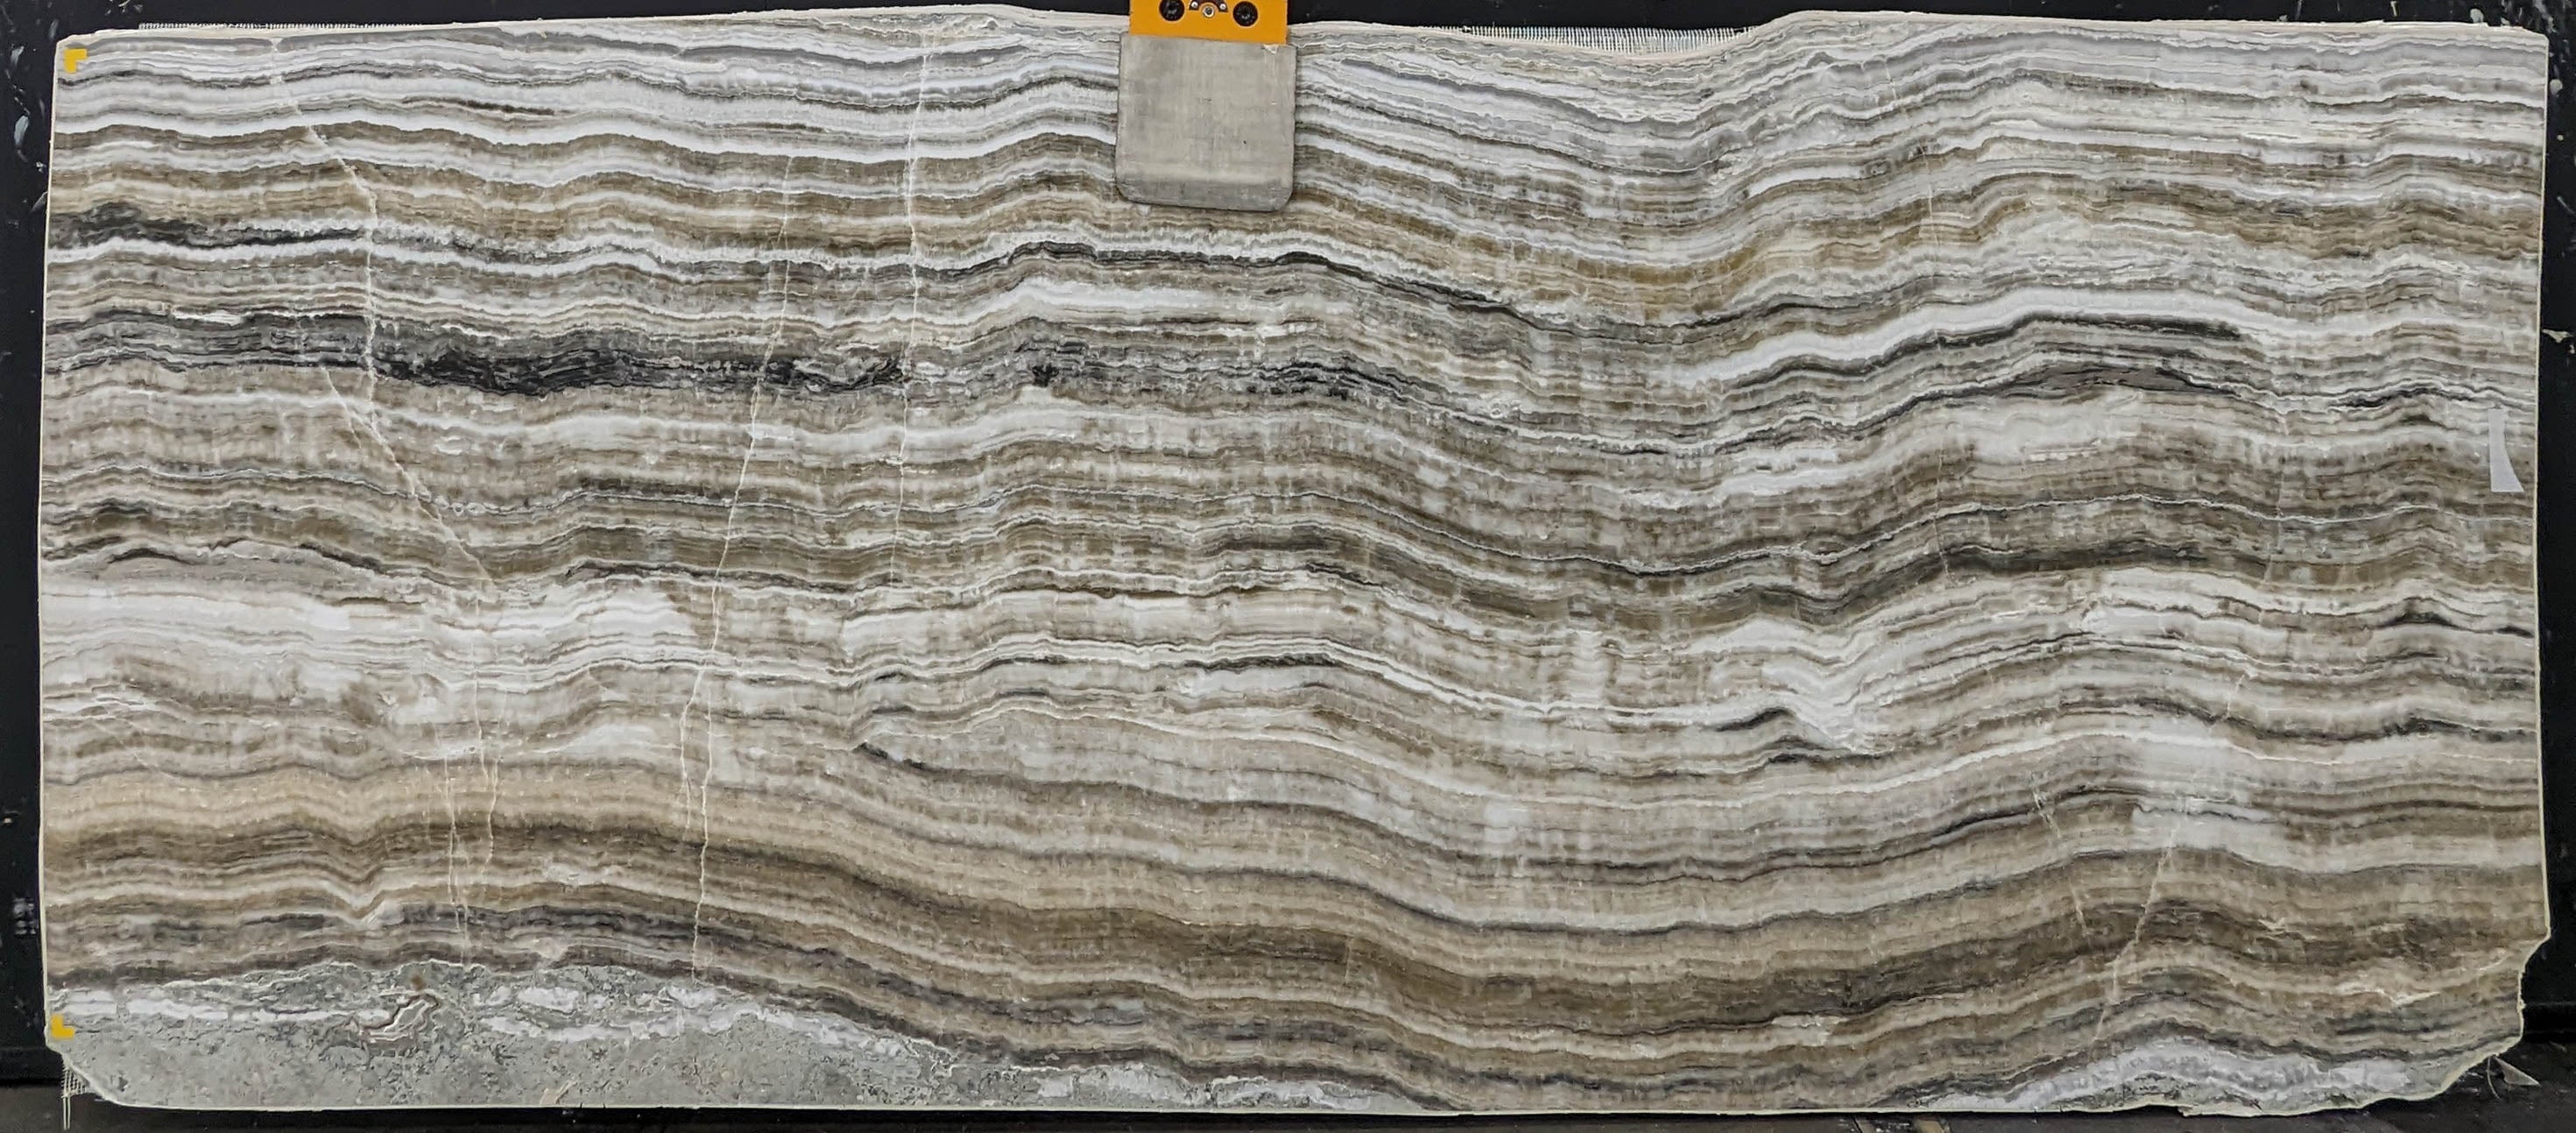  Grey Onyx Slab 3/4  Polished Stone - KM22521#58 -  47x111 